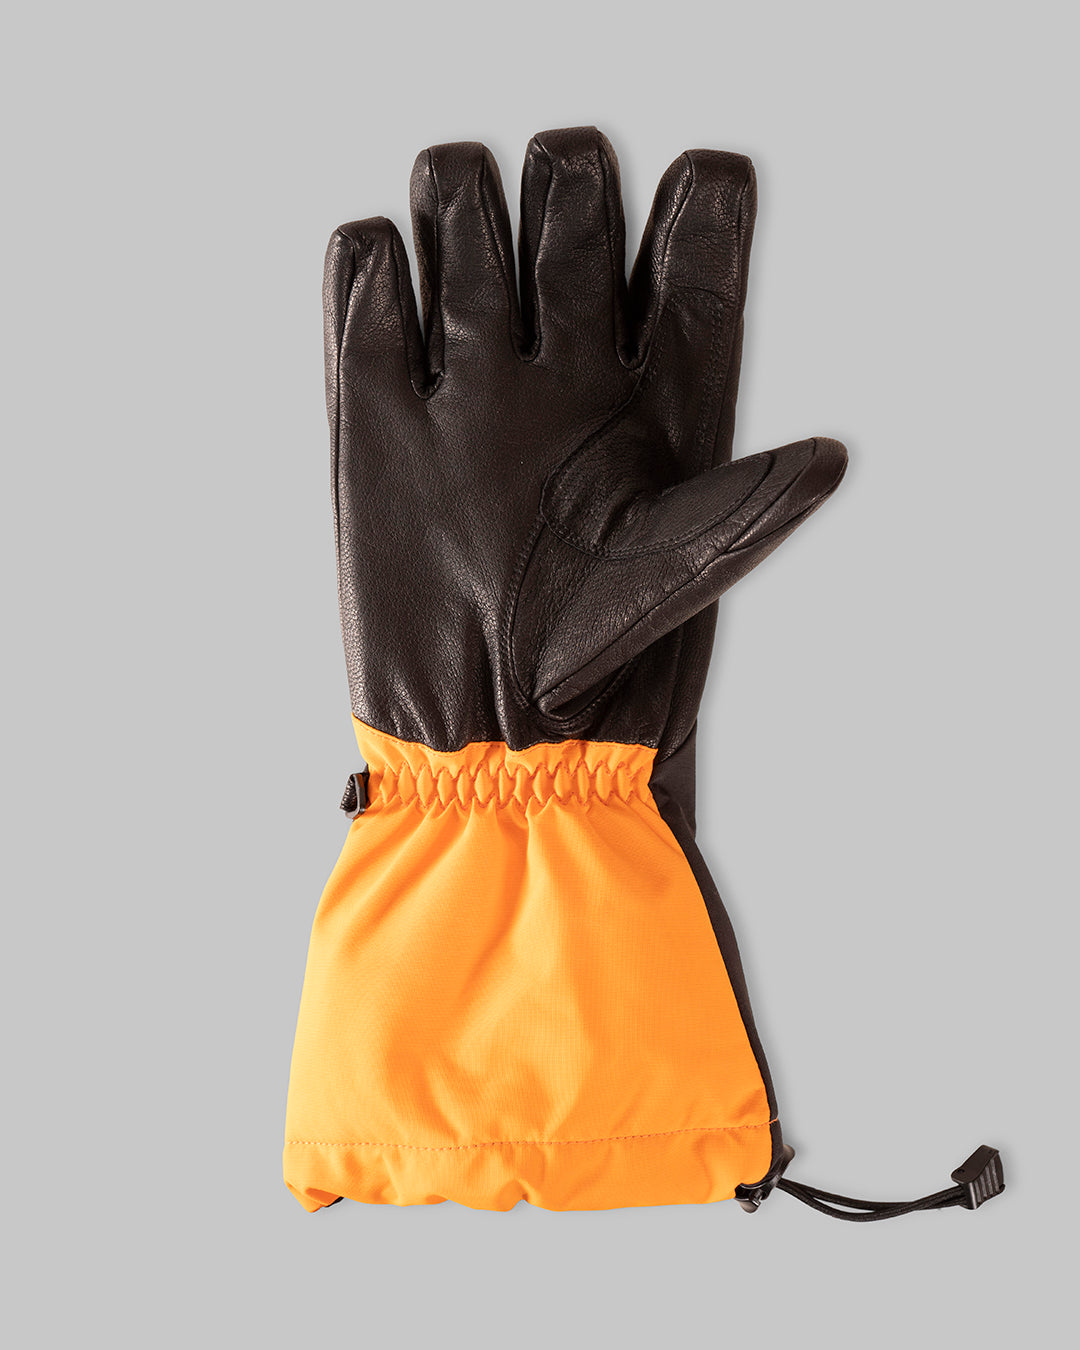 Tobe Outerwear Capto Gauntlet V3 Glove 800422-